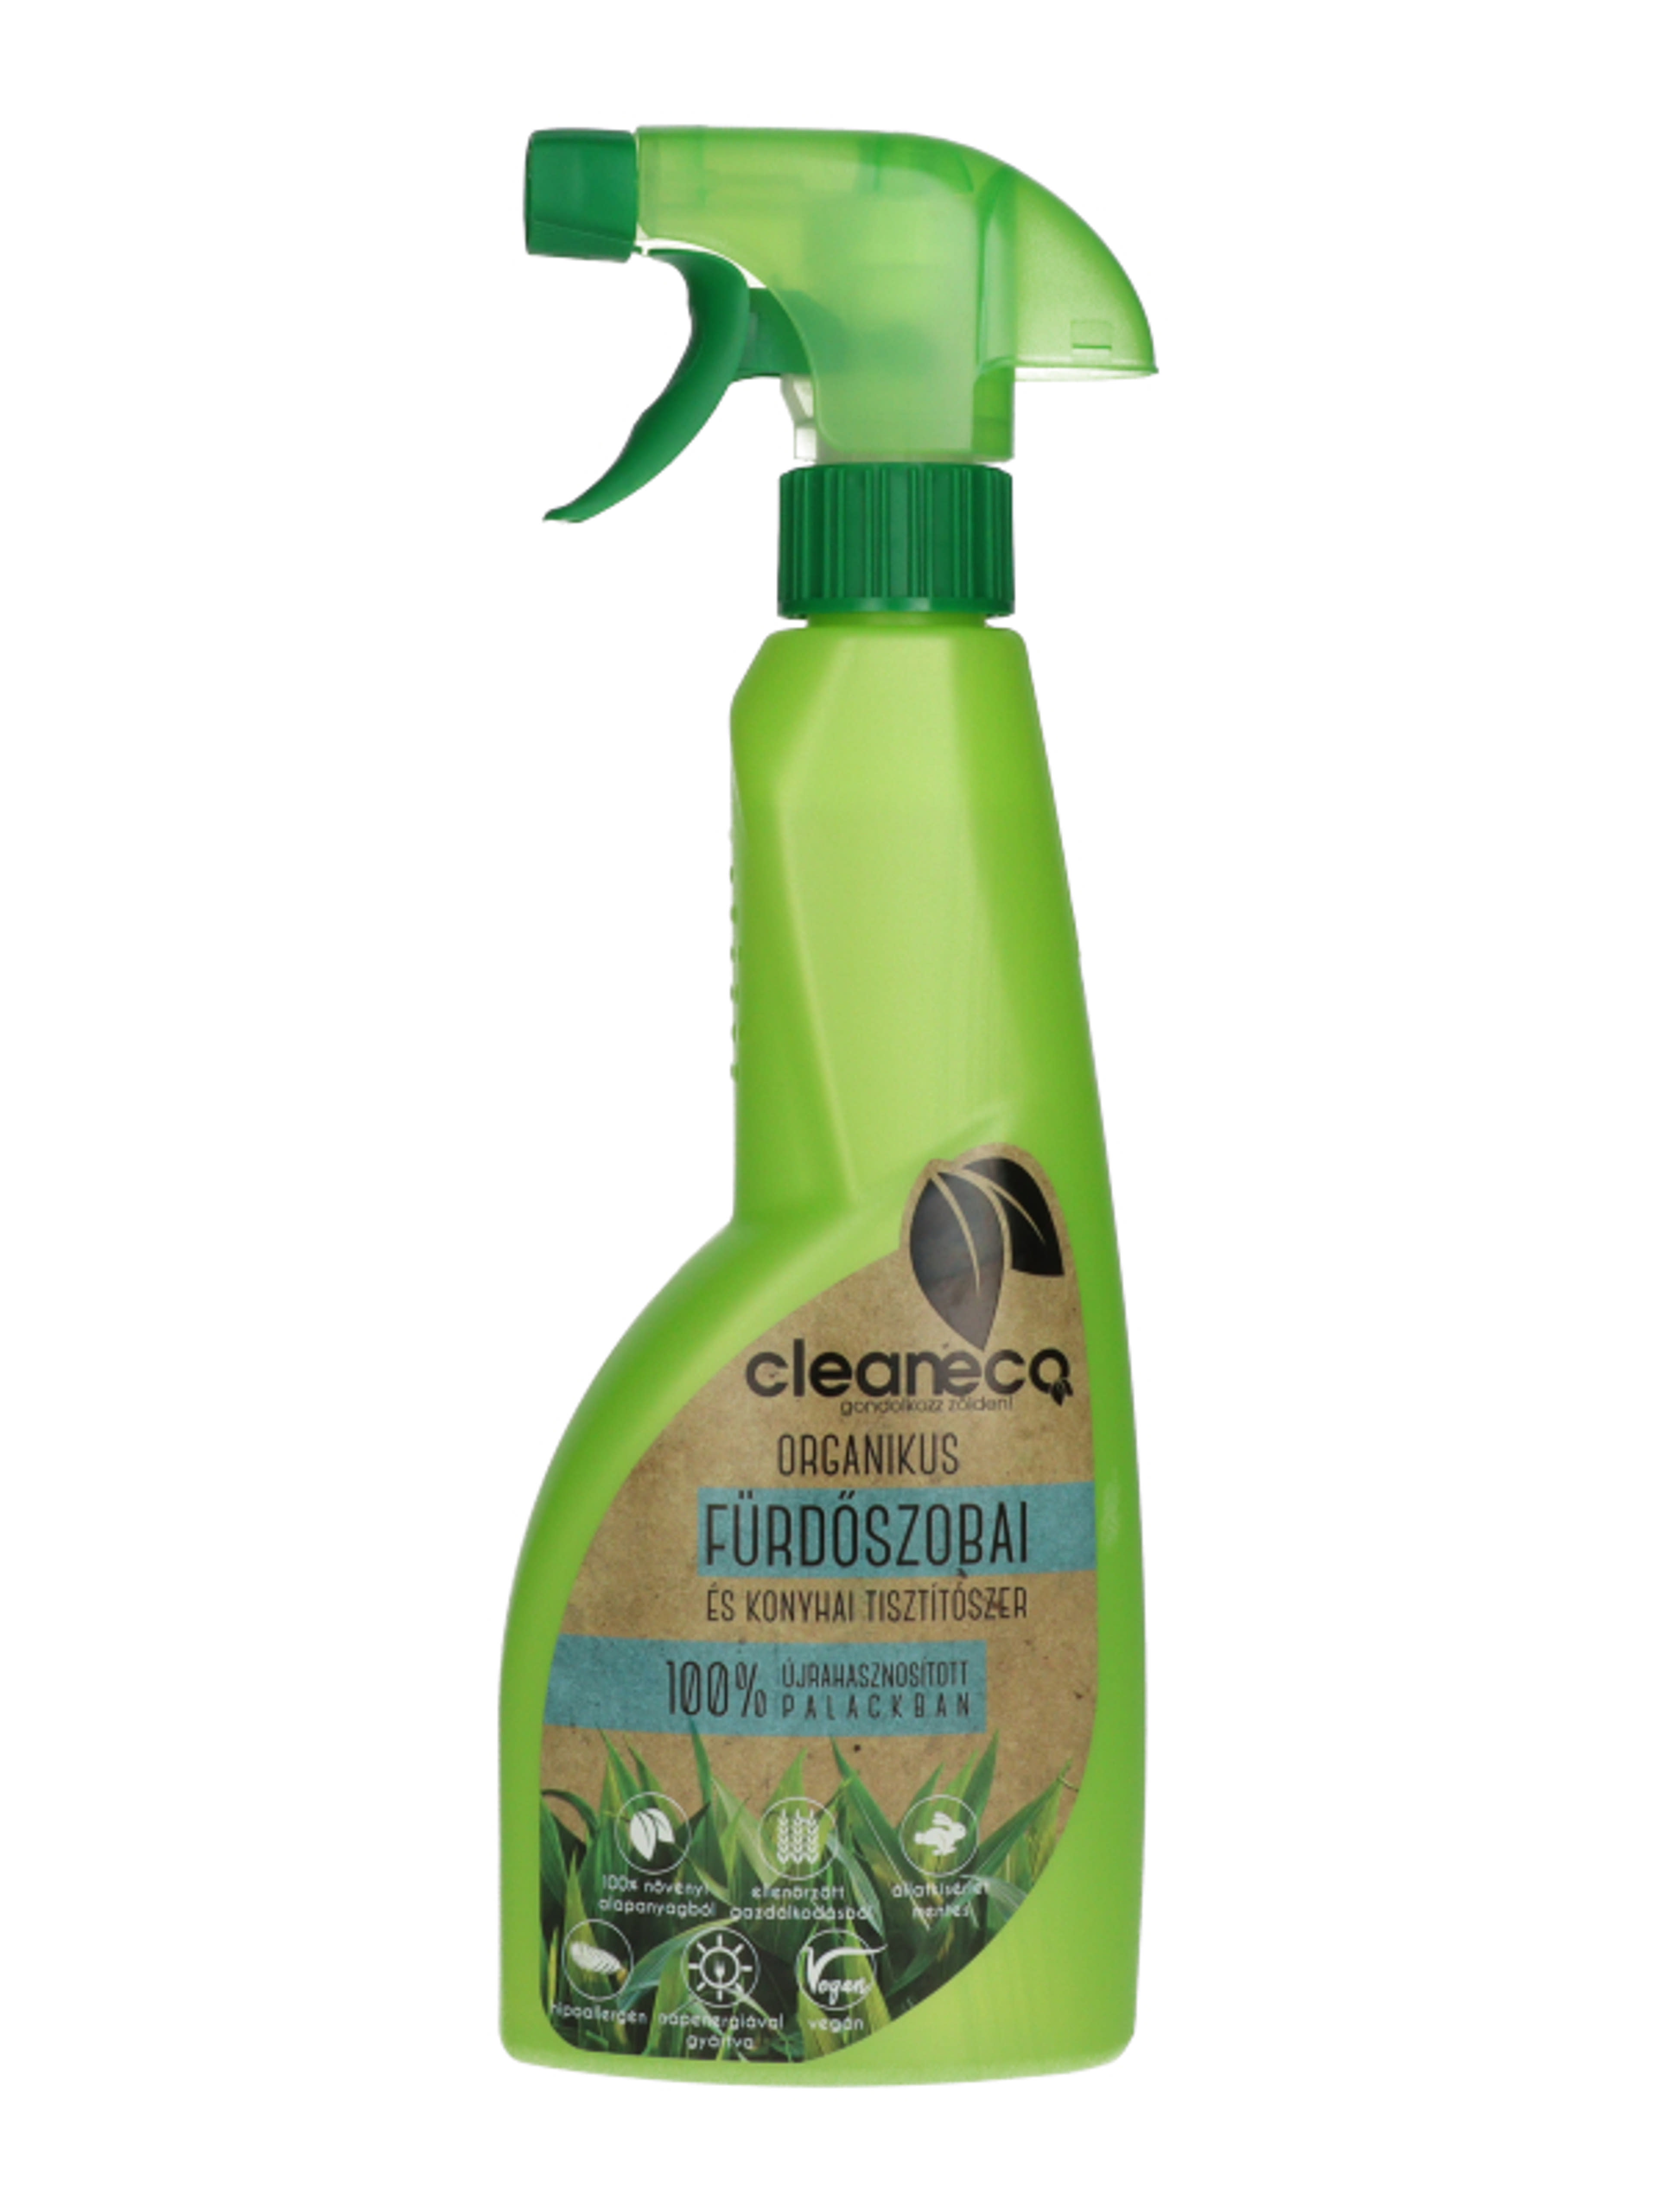 Cleaneco Organikus fürdőszobai és konyhai tisztítószer spray - 500 ml